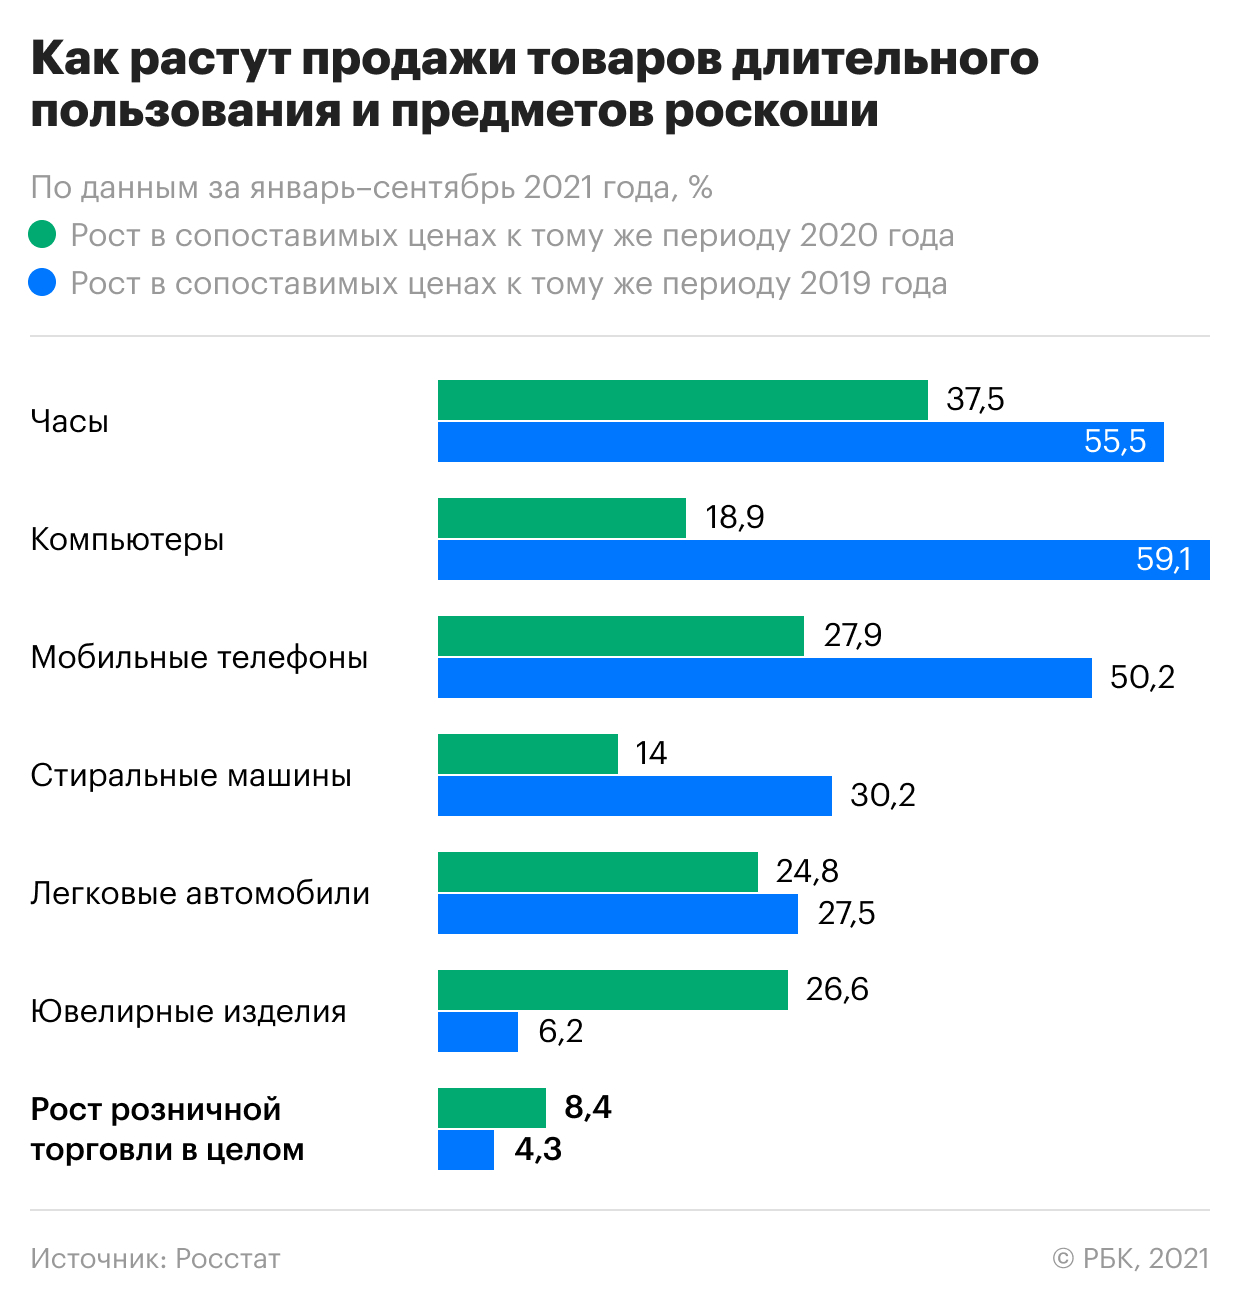 Россияне в пандемию стали покупать больше часов и машин. Инфографика